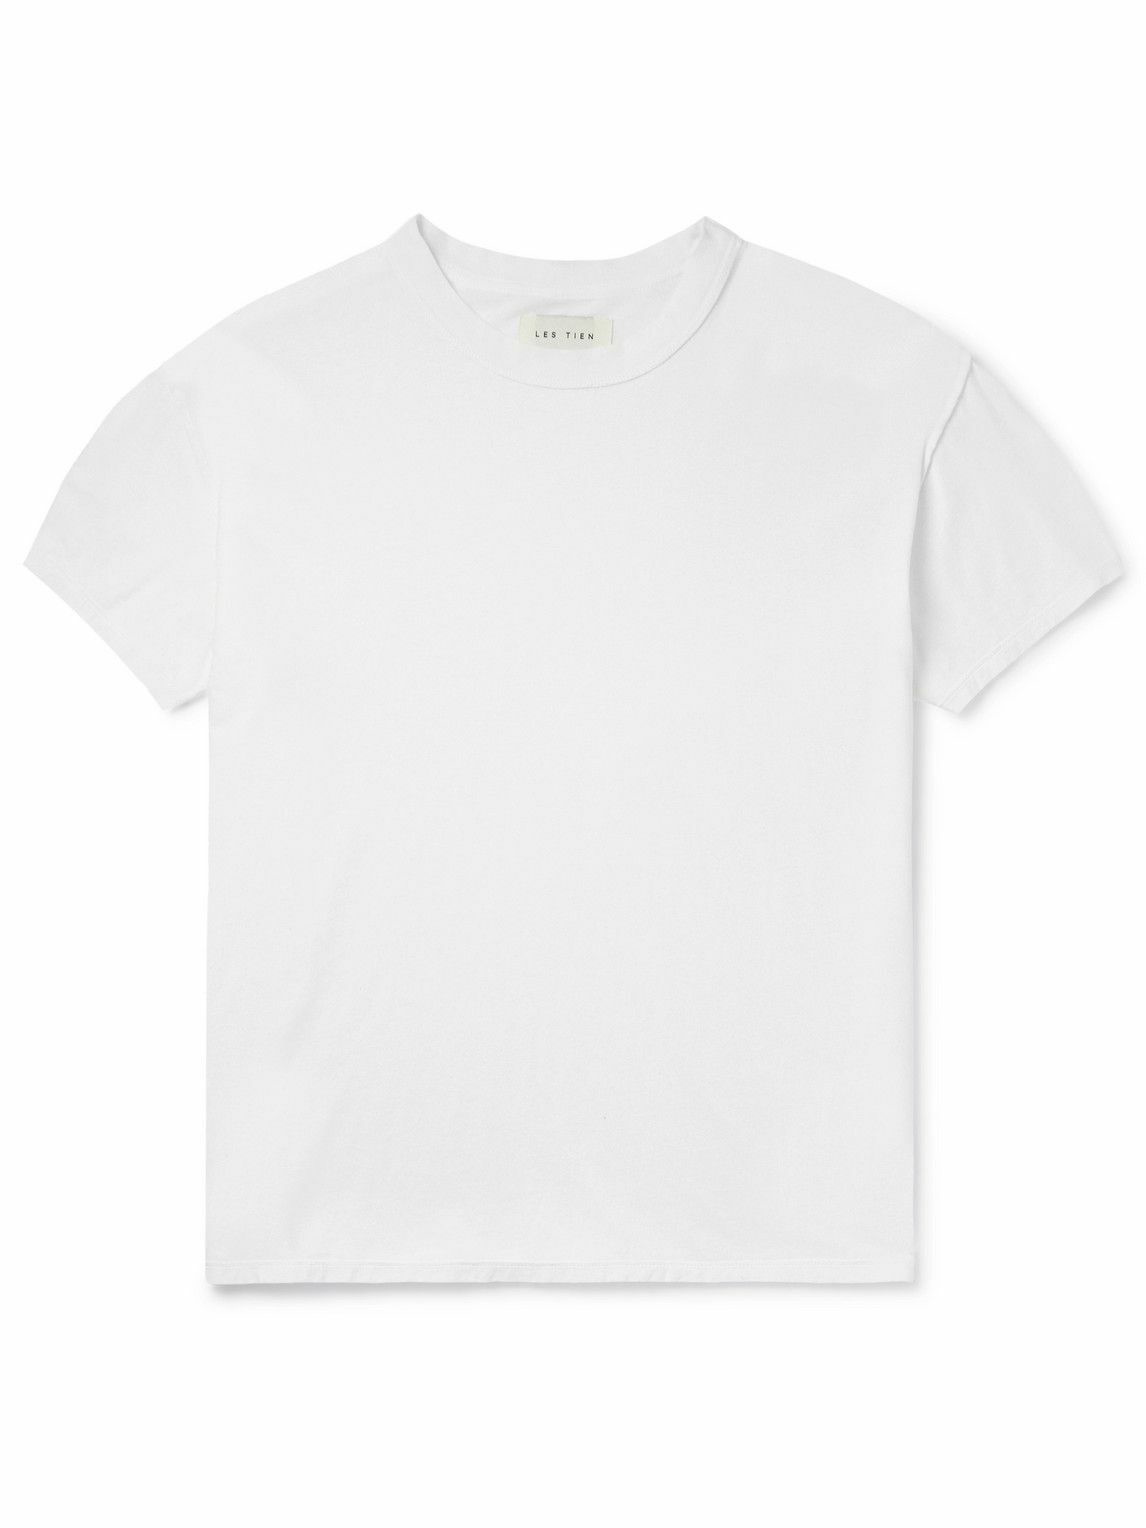 Les Tien - Inside Out Cotton-Jersey T-Shirt - White Les Tien